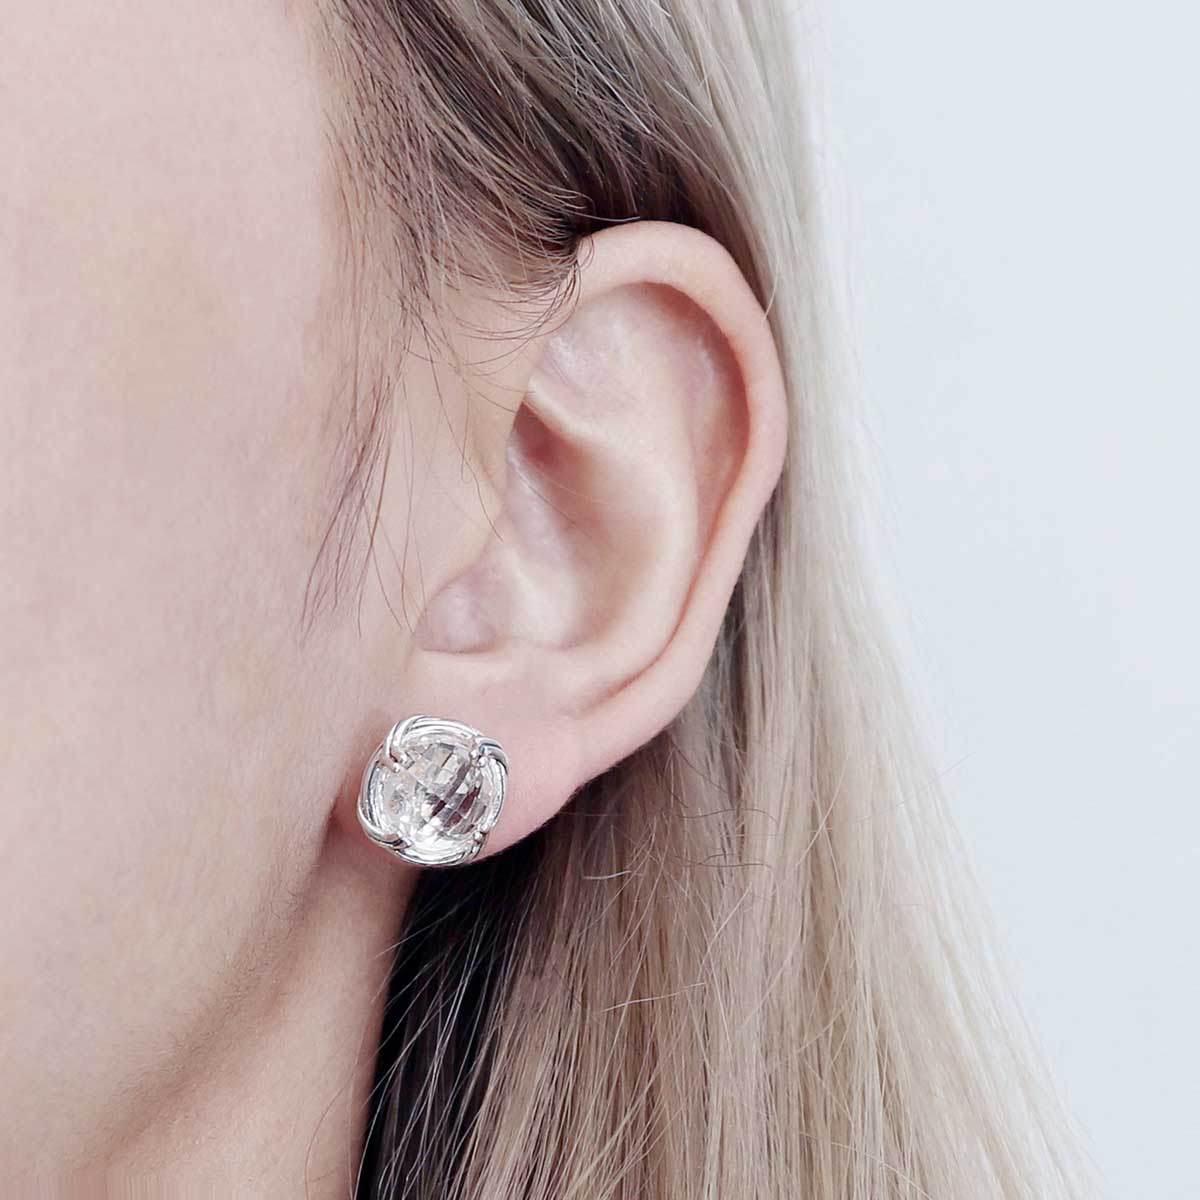 Fantasies Rock Crystal Stud Earrings in sterling silver 10mm